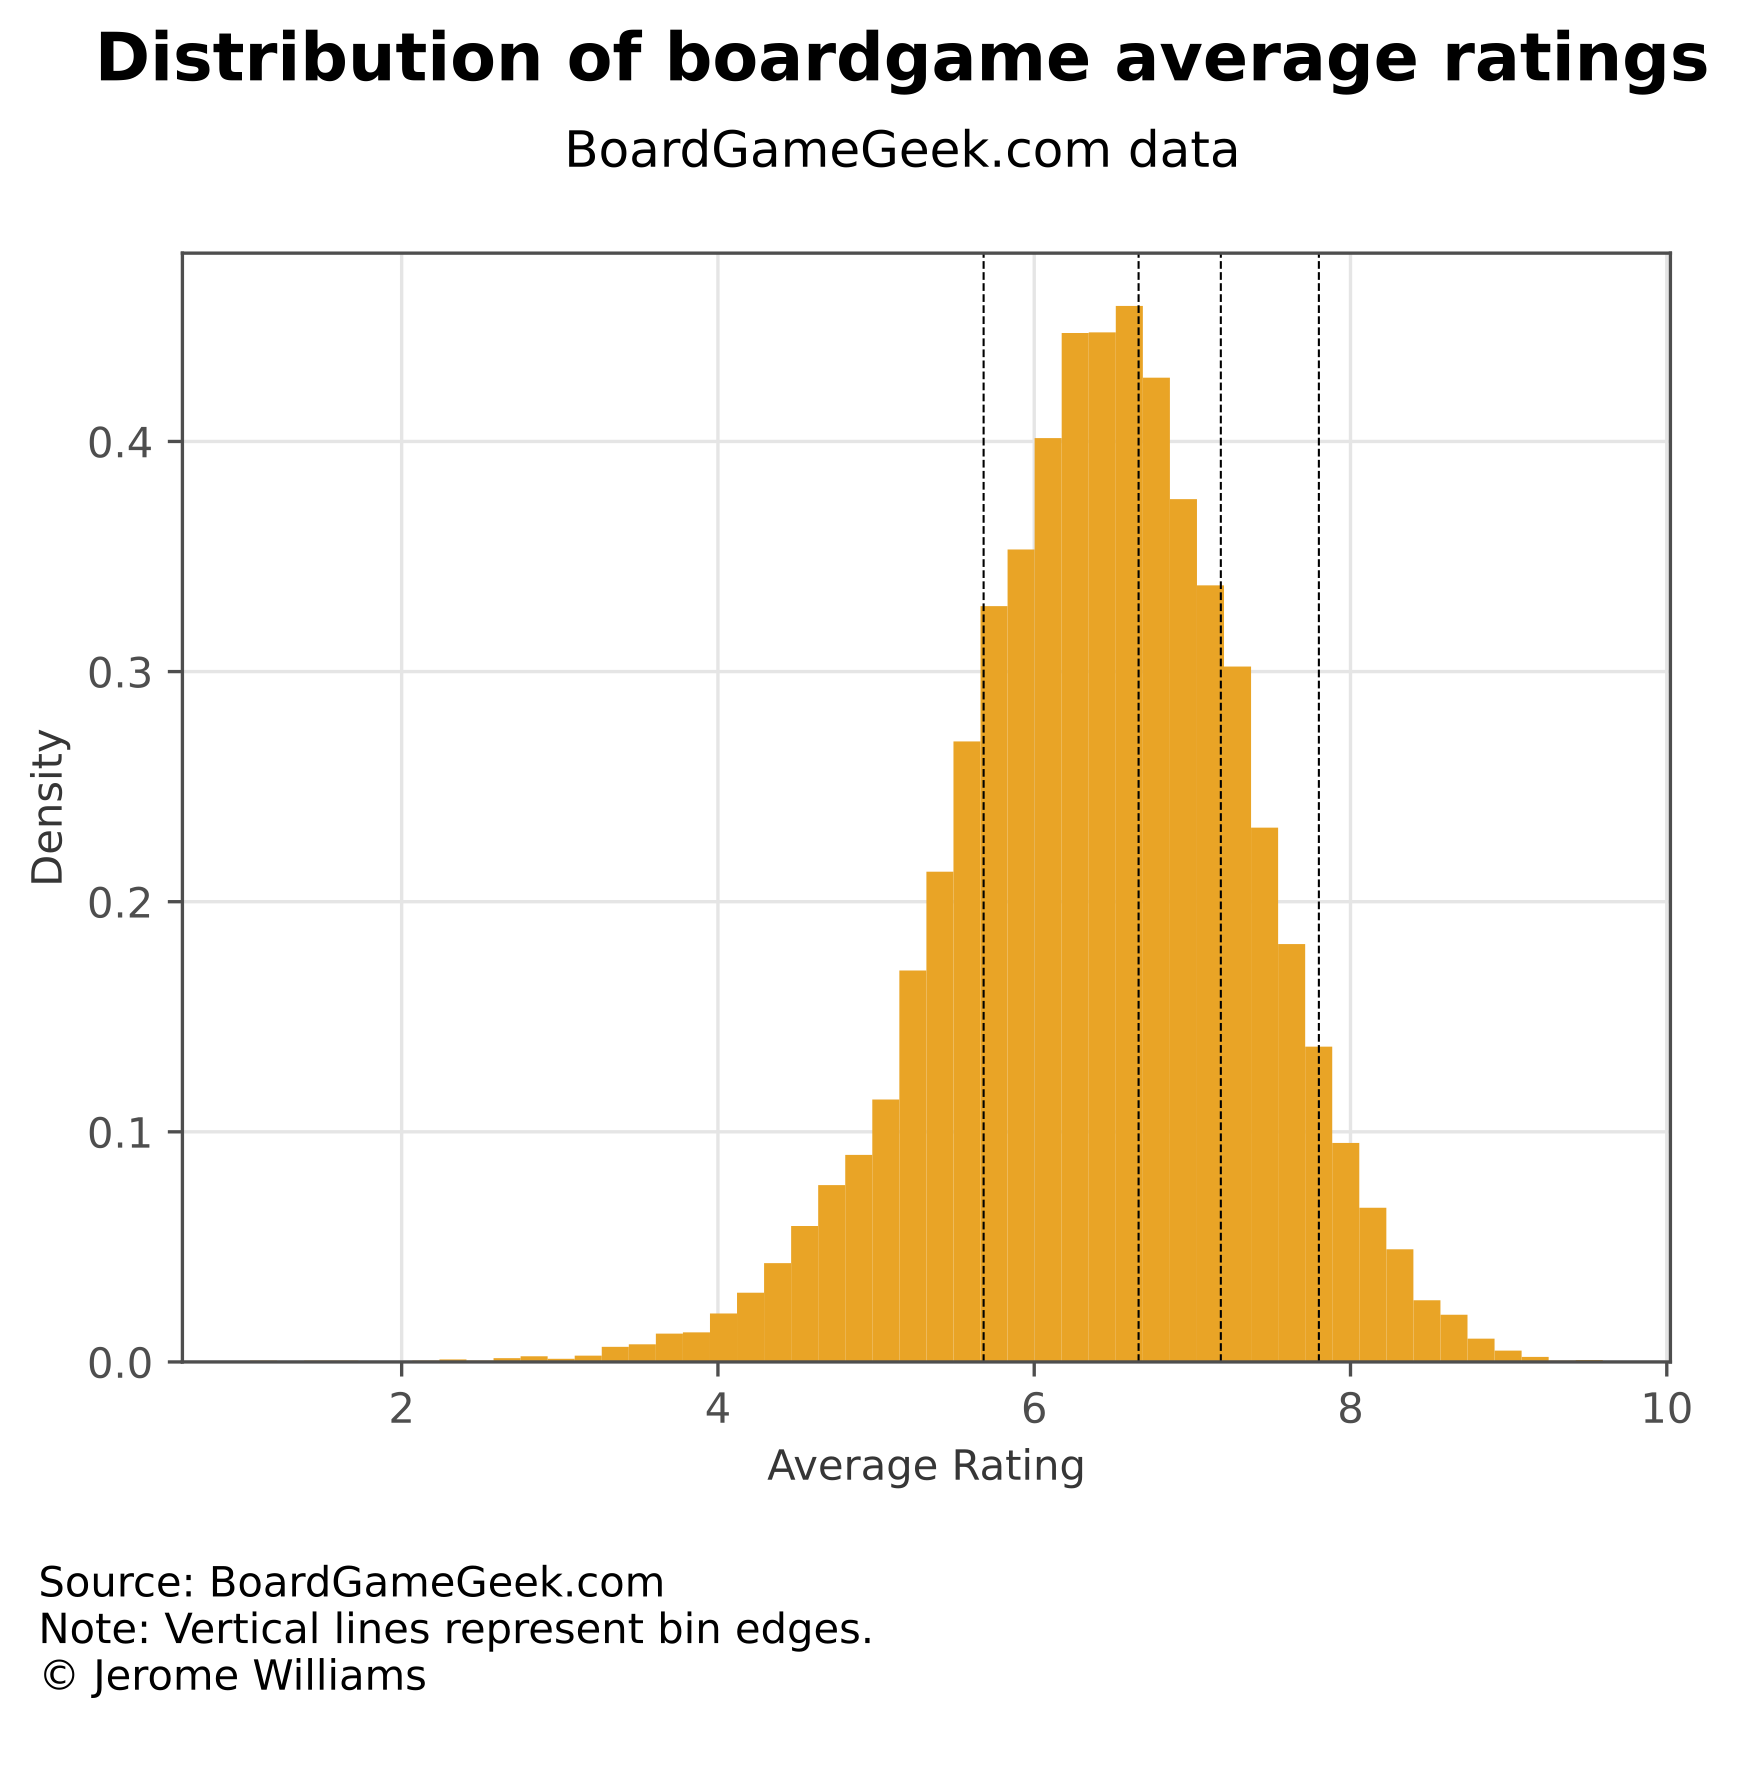 Rating distribution